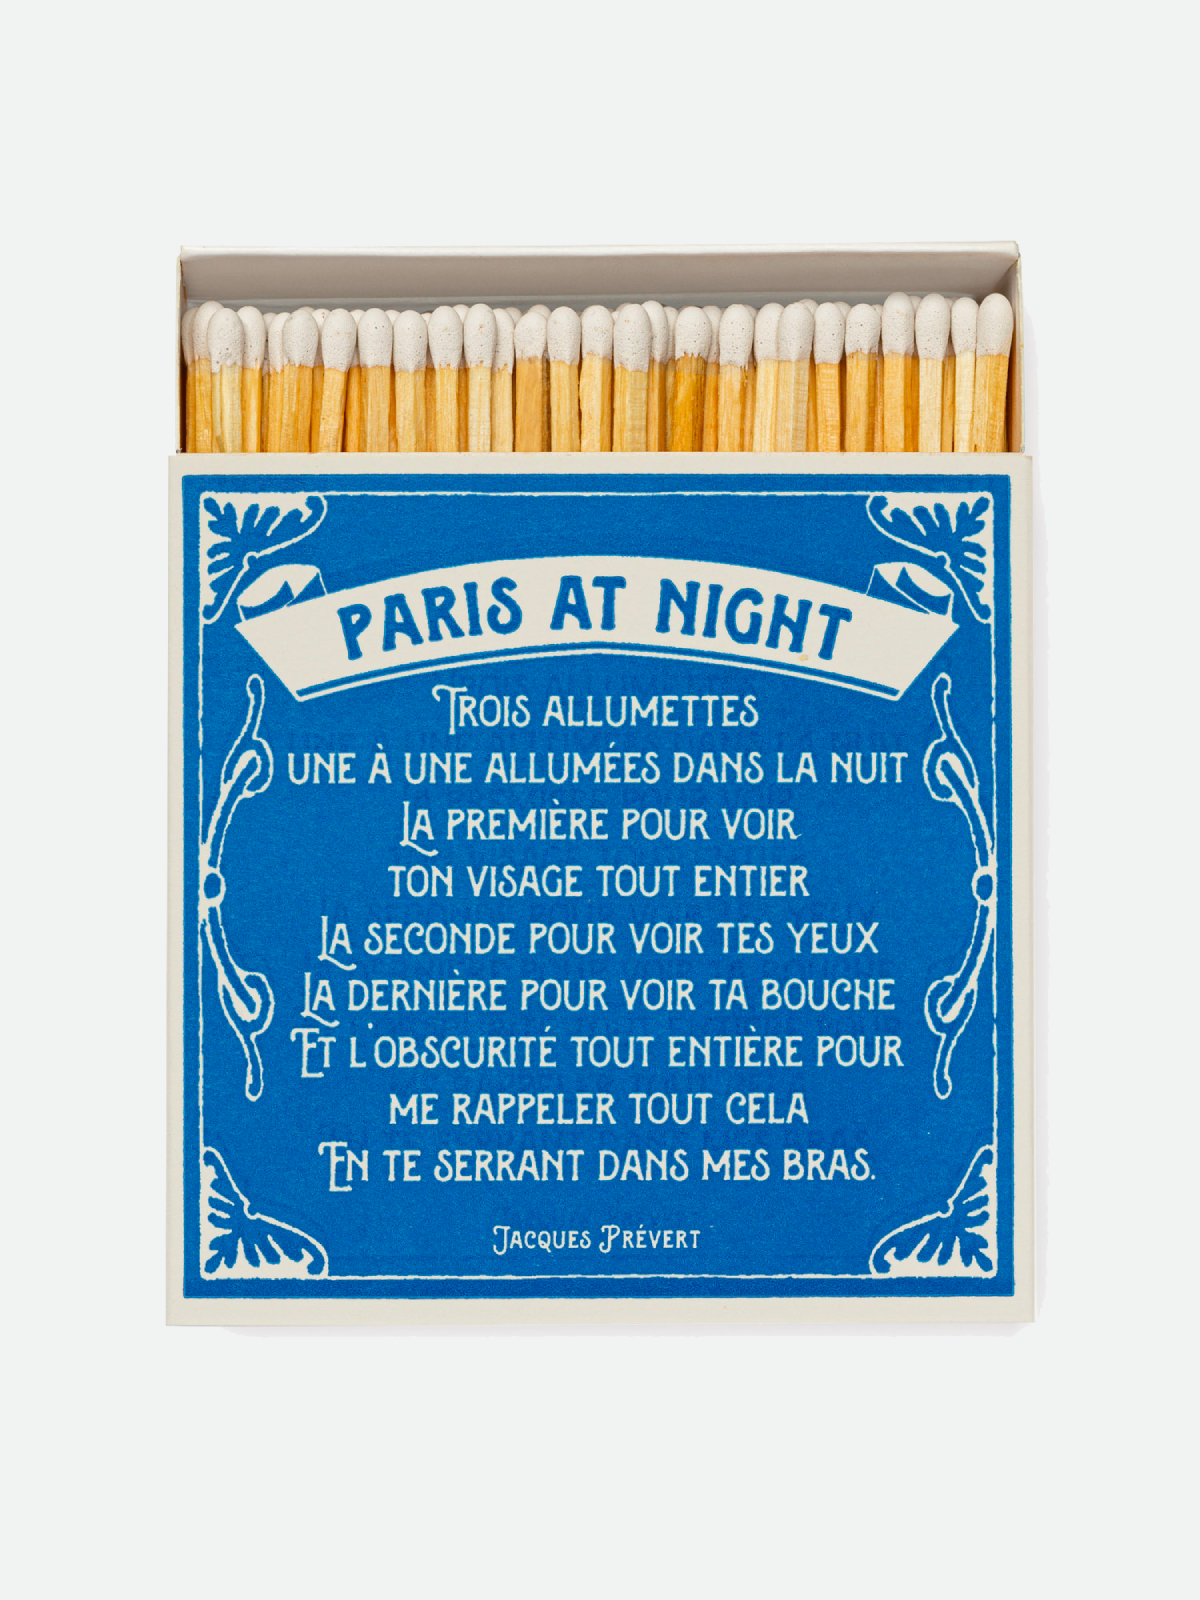 Paris At Night Matches